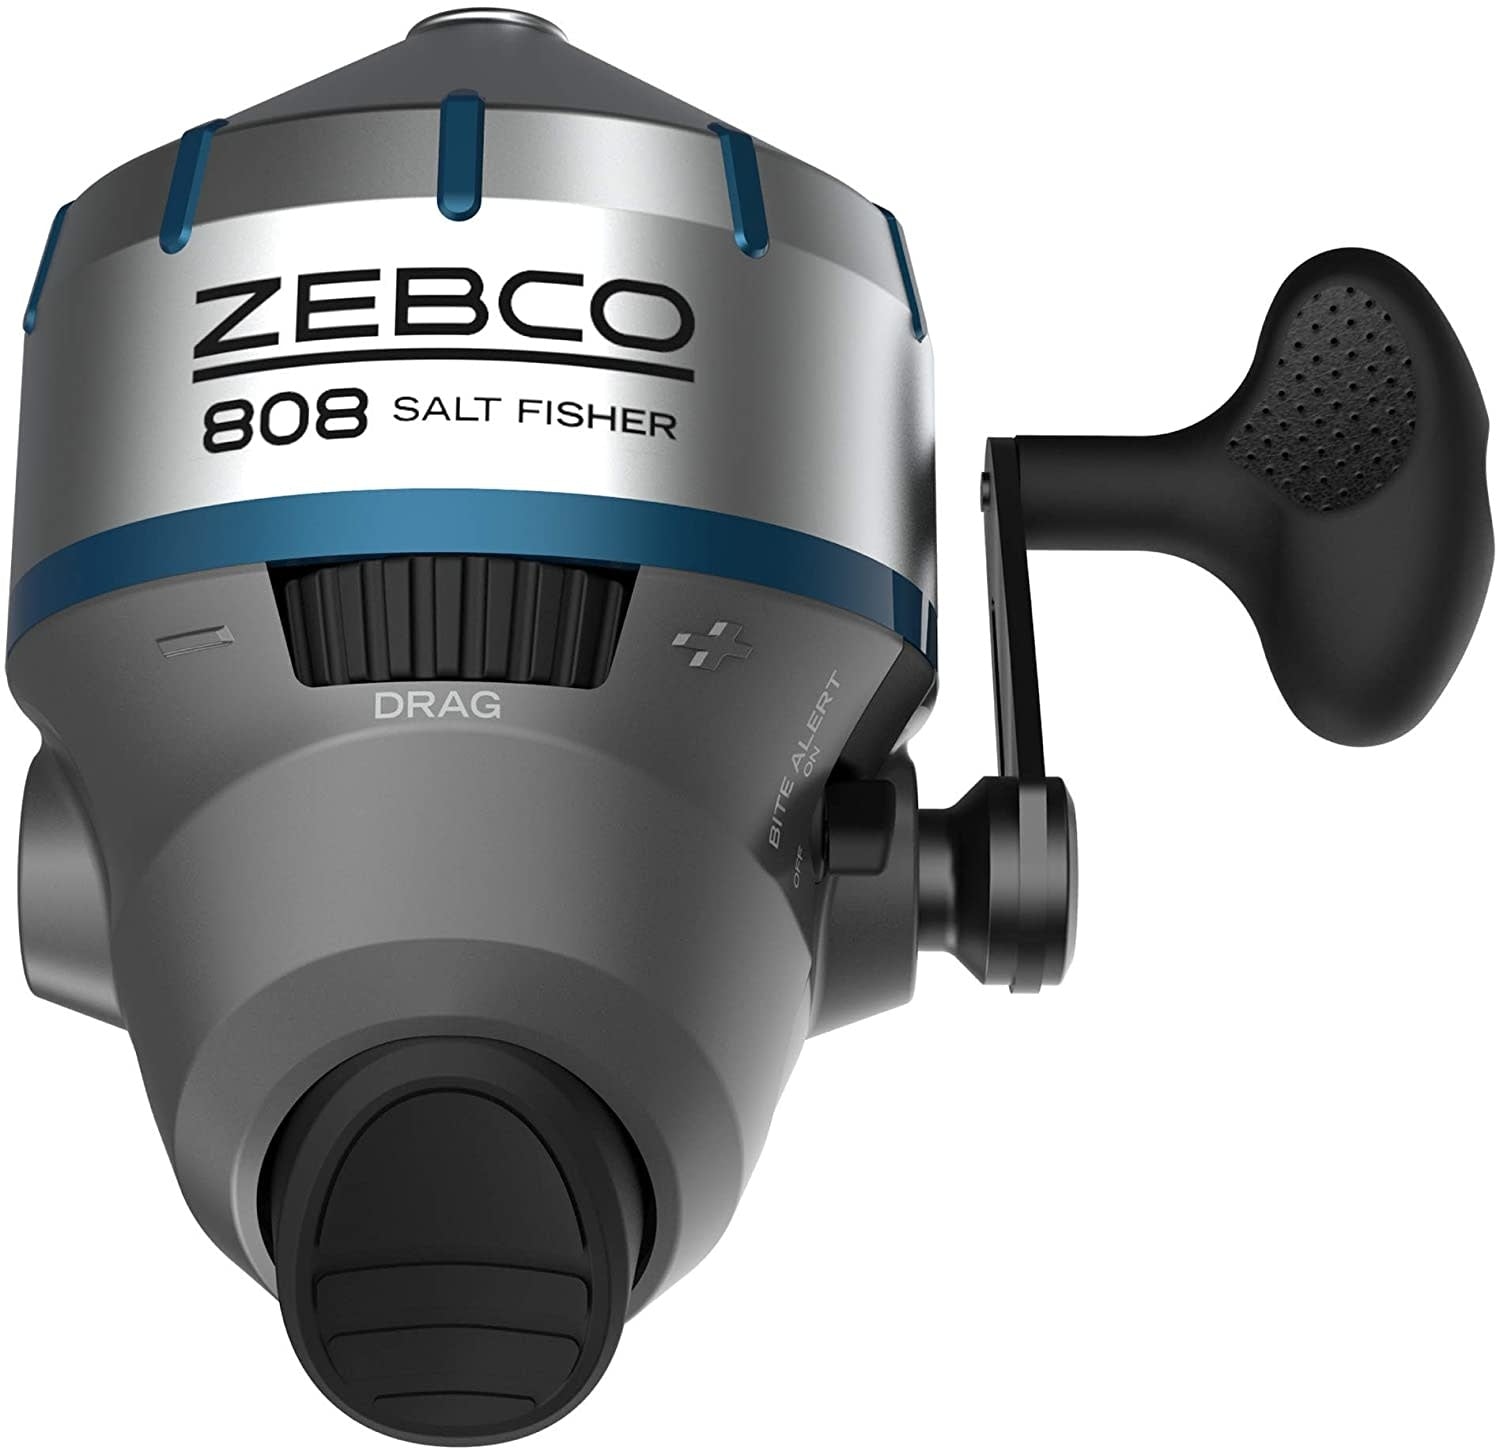 Zebco Saltwater Spincast Reel - 808